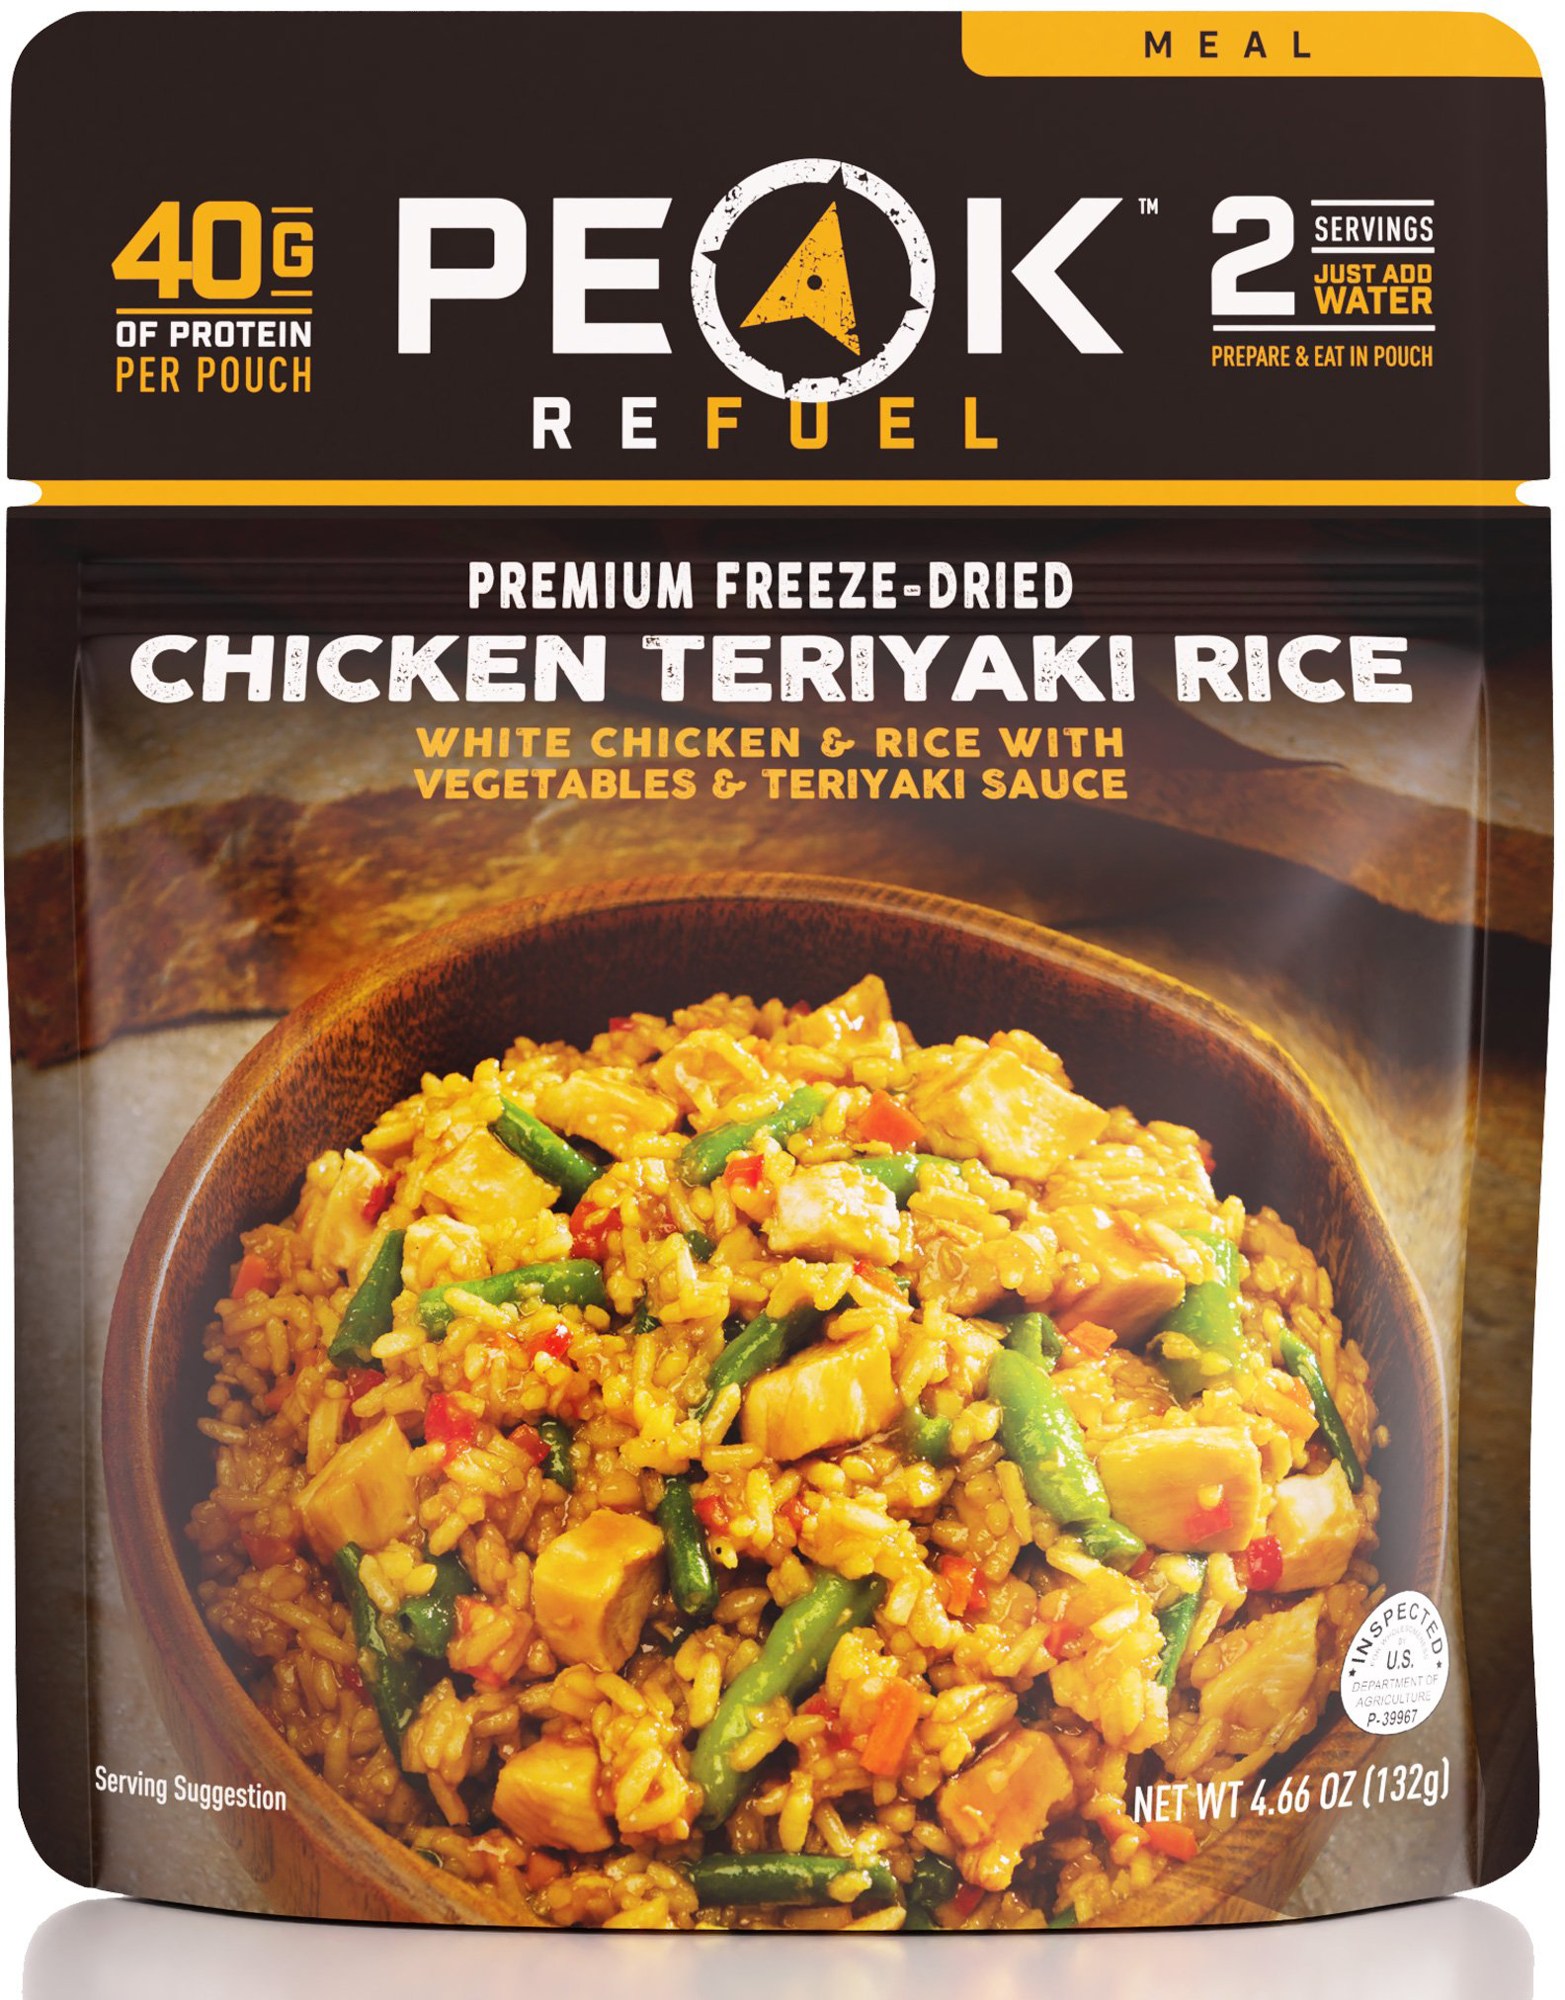 Курица с рисом Терияки – 2 порции PEAK REFUEL тяхан с лососем и терияки